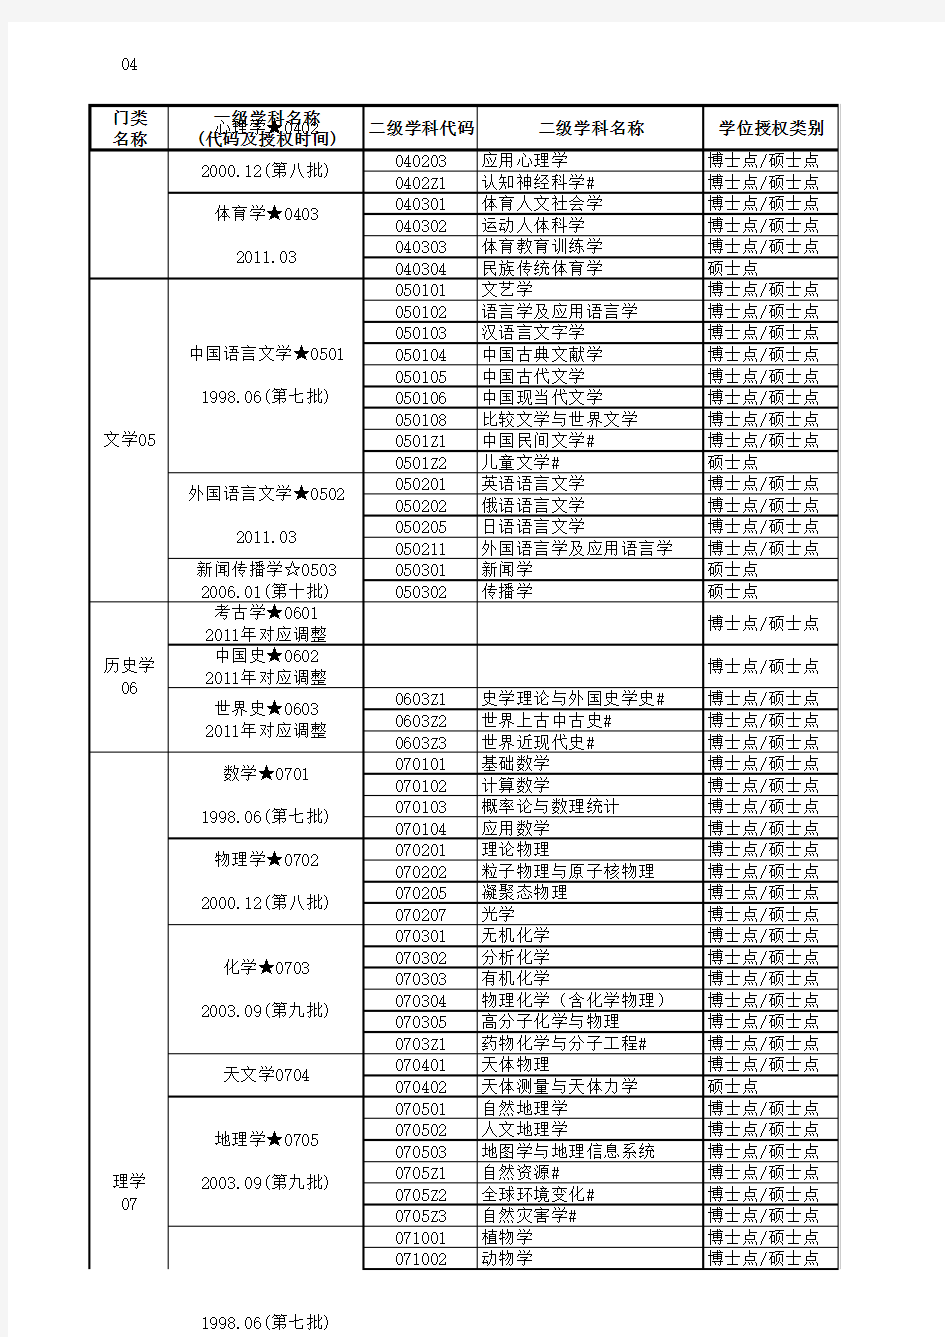 北京师范大学二级学科目录(201606)